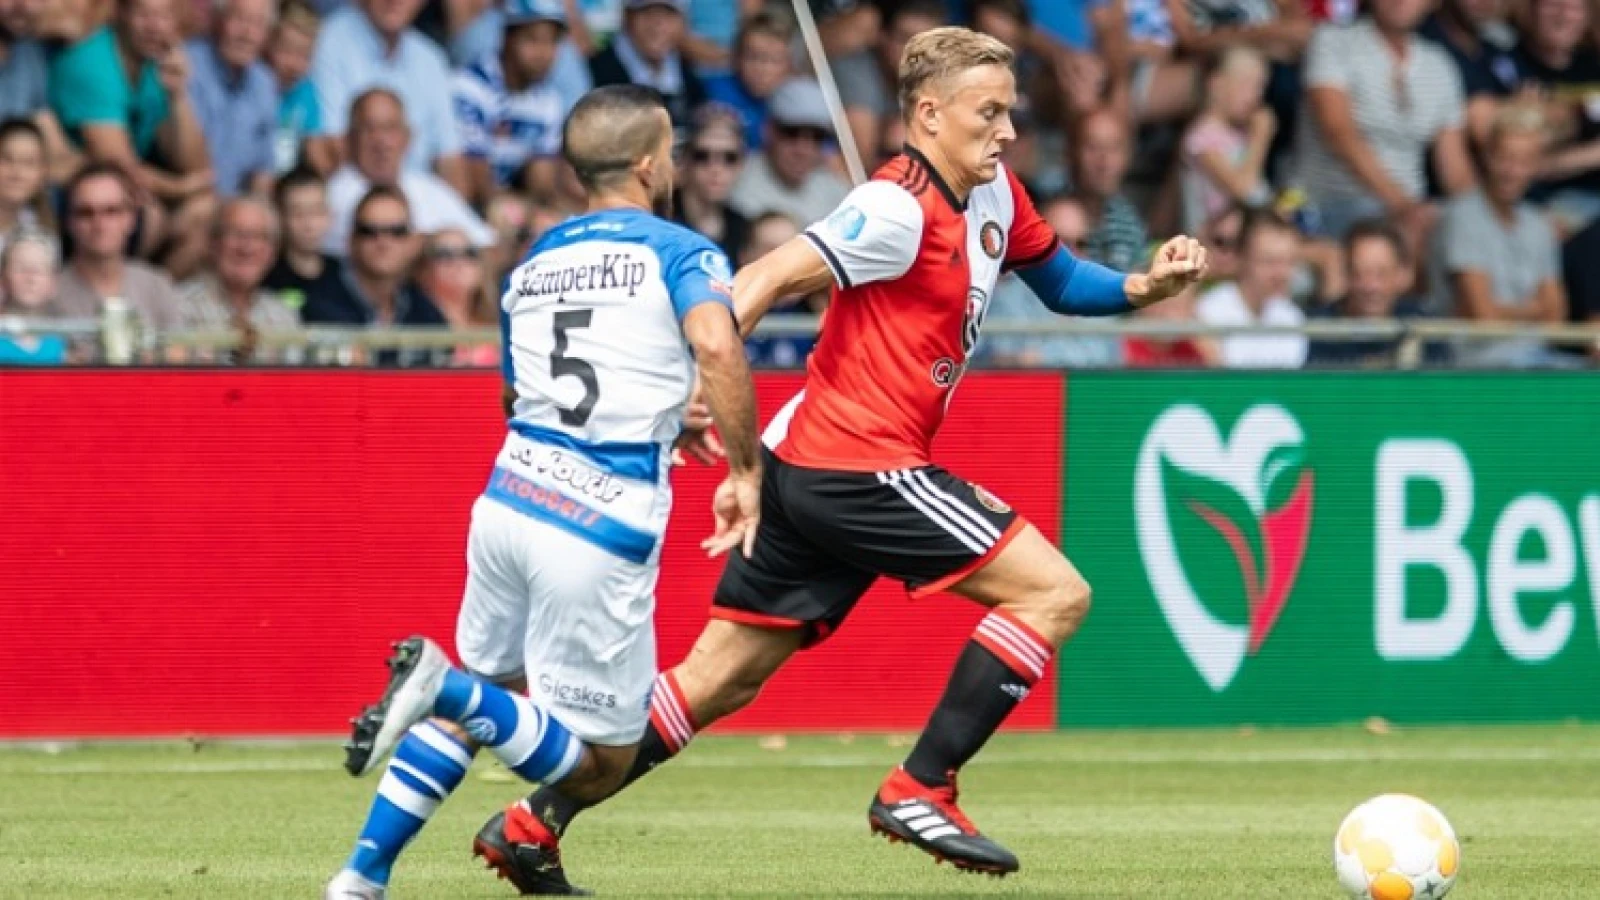 LIVE | De Graafschap - Feyenoord 2-0 | Einde wedstrijd